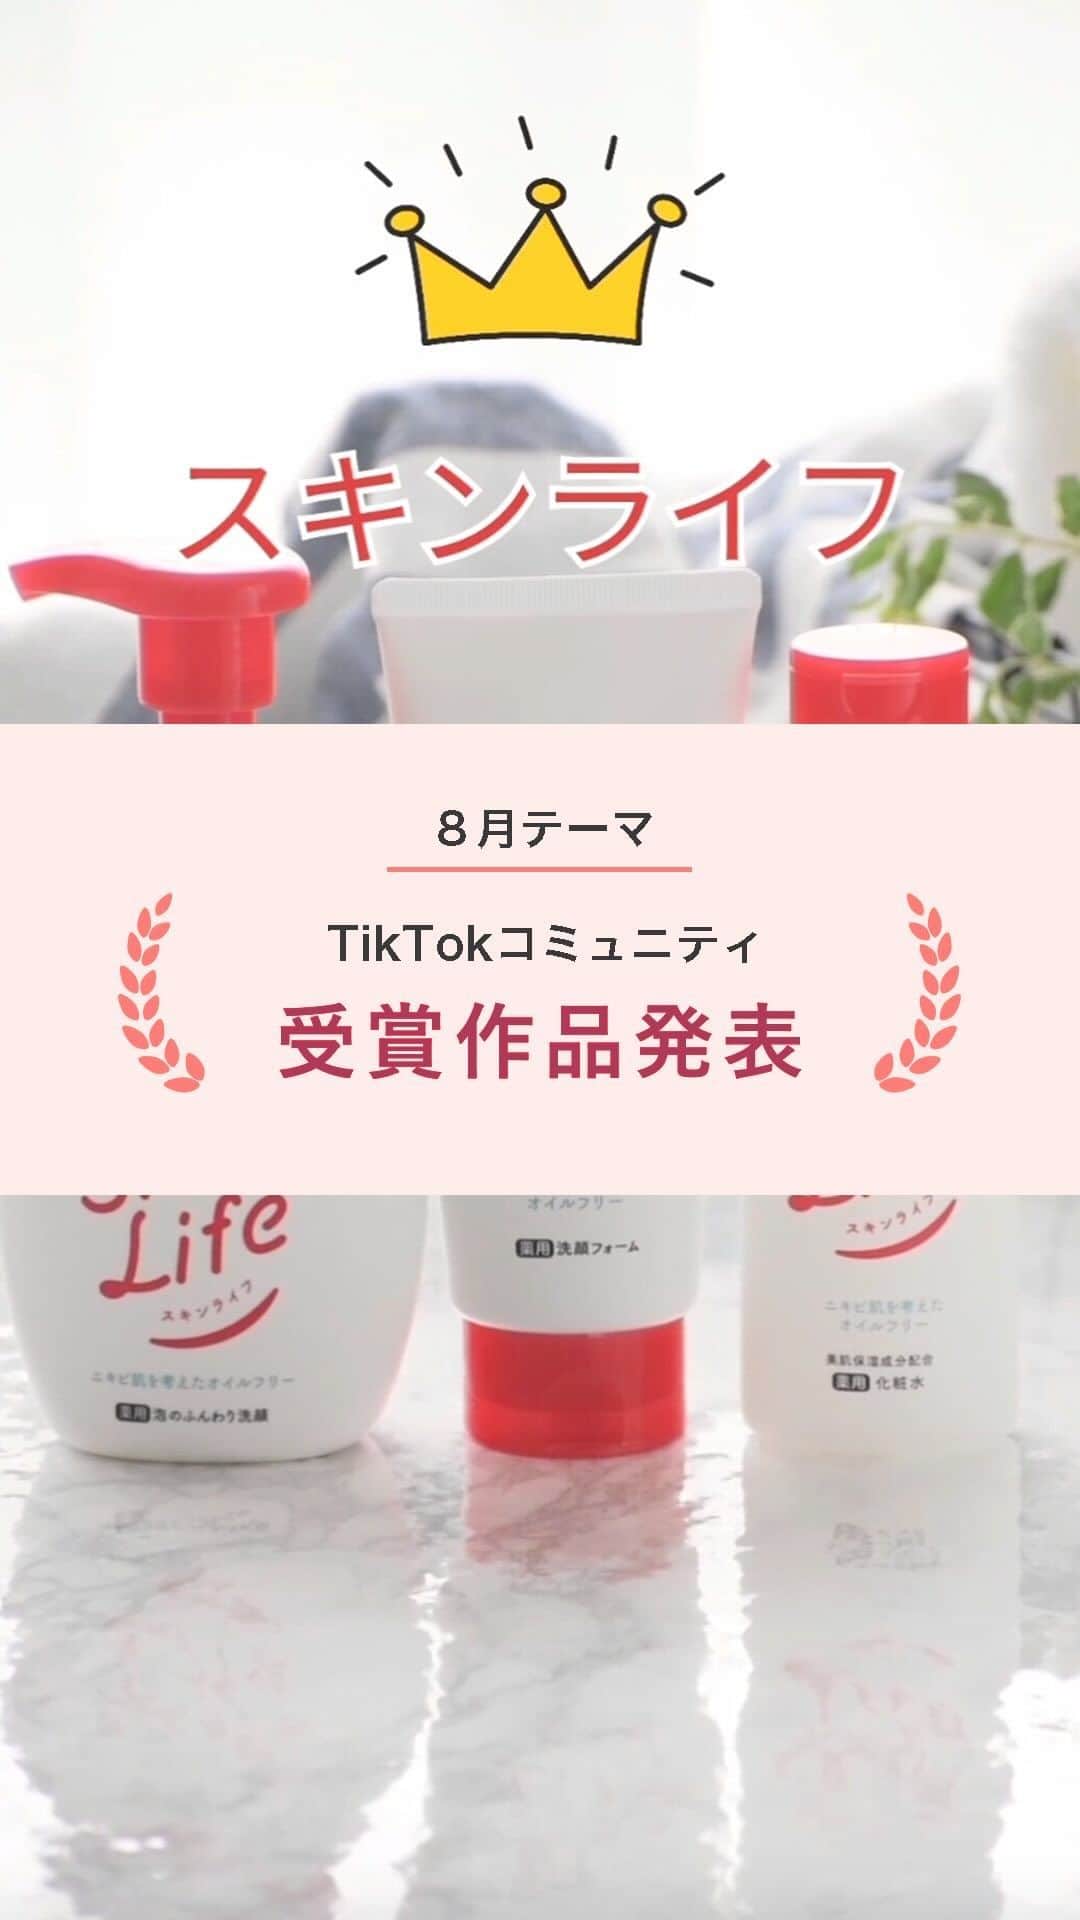 スマホの写真が売れちゃうアプリ「スナップマート」のインスタグラム：「@snapmart.jp←過去の動画受賞作品はリール動画からチェックしてね。  【TikTok研究コミュニティ3期生 8月動画テーマ「美容」】  7月から活動を開始したSnapmart TikTok研究コミュニティ3期生。今回は54名の方に参加していただいており、月に1度のテーマに合わせて動画を作っていただいています。  第2回目となる8月の動画テーマは「美容」。  スキンケア商品やコスメ・ネイル、ポップアップイベントなど、美容にまつわる多彩な動画が集まりました！ 今回はそんな応募作品の中から、優秀作品を発表します✨  美容はアンバサダーの中でも特に商品数が多いジャンルなので、アンバサダーの動画制作の参考にもなるはず。 ぜひ作品を見てご自身の動画制作の参考にしてみてくださいね。  👑snap-rabbitさん( @snap_rabbit0 )   【工夫したポイント】 TikTokは、人気の楽曲使用で伸びやすいと聞いたので、今回は曲を選んでから動画を作りました。  【スナップマートからのコメント】 企画の切り口がお見事！みんなが、気になる「性格診断」を美容商品の紹介に組み込んだのは、SNSコンテンツ作りのセンスがありますね！ 自然と商品訴求もできているし、テンポや文字入れ、イラストの差し込みなども上手でした。  ＊＊＊  スナップマートでは、動画で商品の魅力を伝える「動画アンバサダー」や動画コンテストを定期的に開催中！  TikTokやインスタグラムのリールで発信している方が活躍できる場となりますので、ぜひクリエイター登録してくださいね。  クリエイター登録は、@snapmart.jp のプロフィールリンクからアプリをダウンロード！ みんなでクリエイティブのスキルアップを目指そう✨  ＊＊＊   #snapmart  #スナップマート   #カメラ練習中 #カメラ練習中🔰 #写真練習中 #写真うまくなりたい #商品撮影 #ショート動画 #ショートムービー #動画 #動画練習 #スキンライフ #美容 #美容好きな人と繋がりたい」